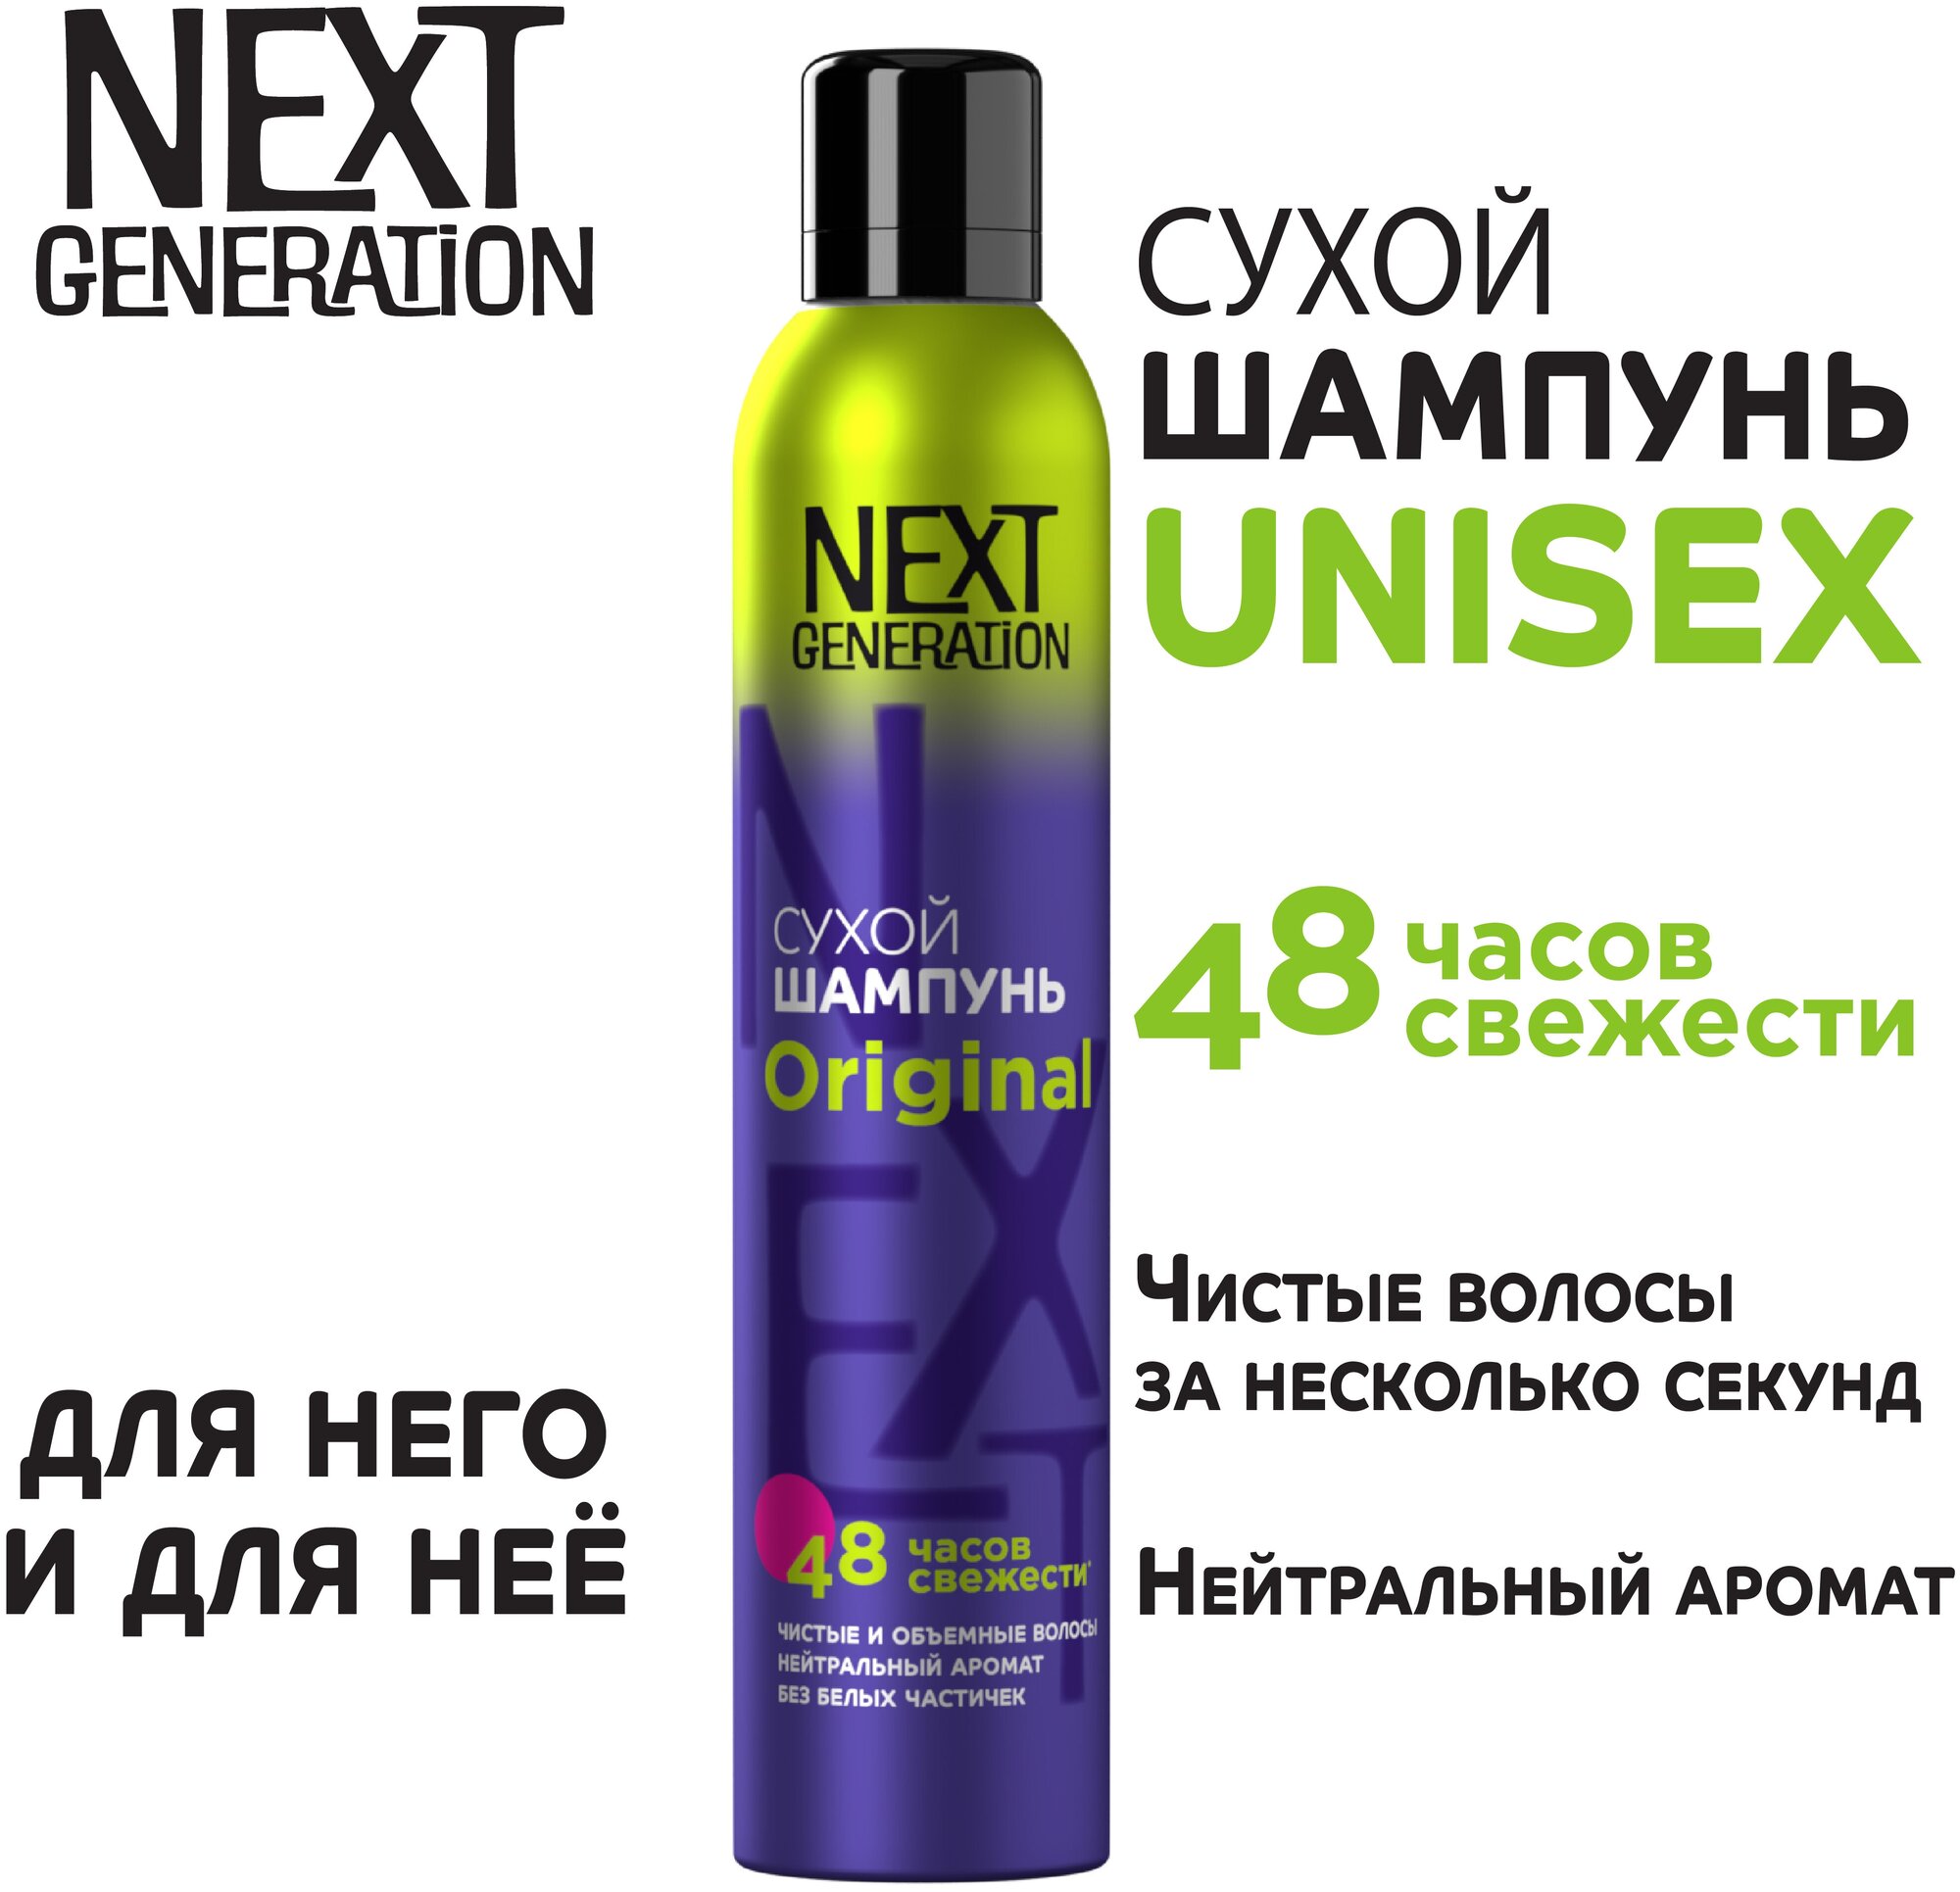 Сухой шампунь для волос Next Generation Original Для нее и для него,200 см3